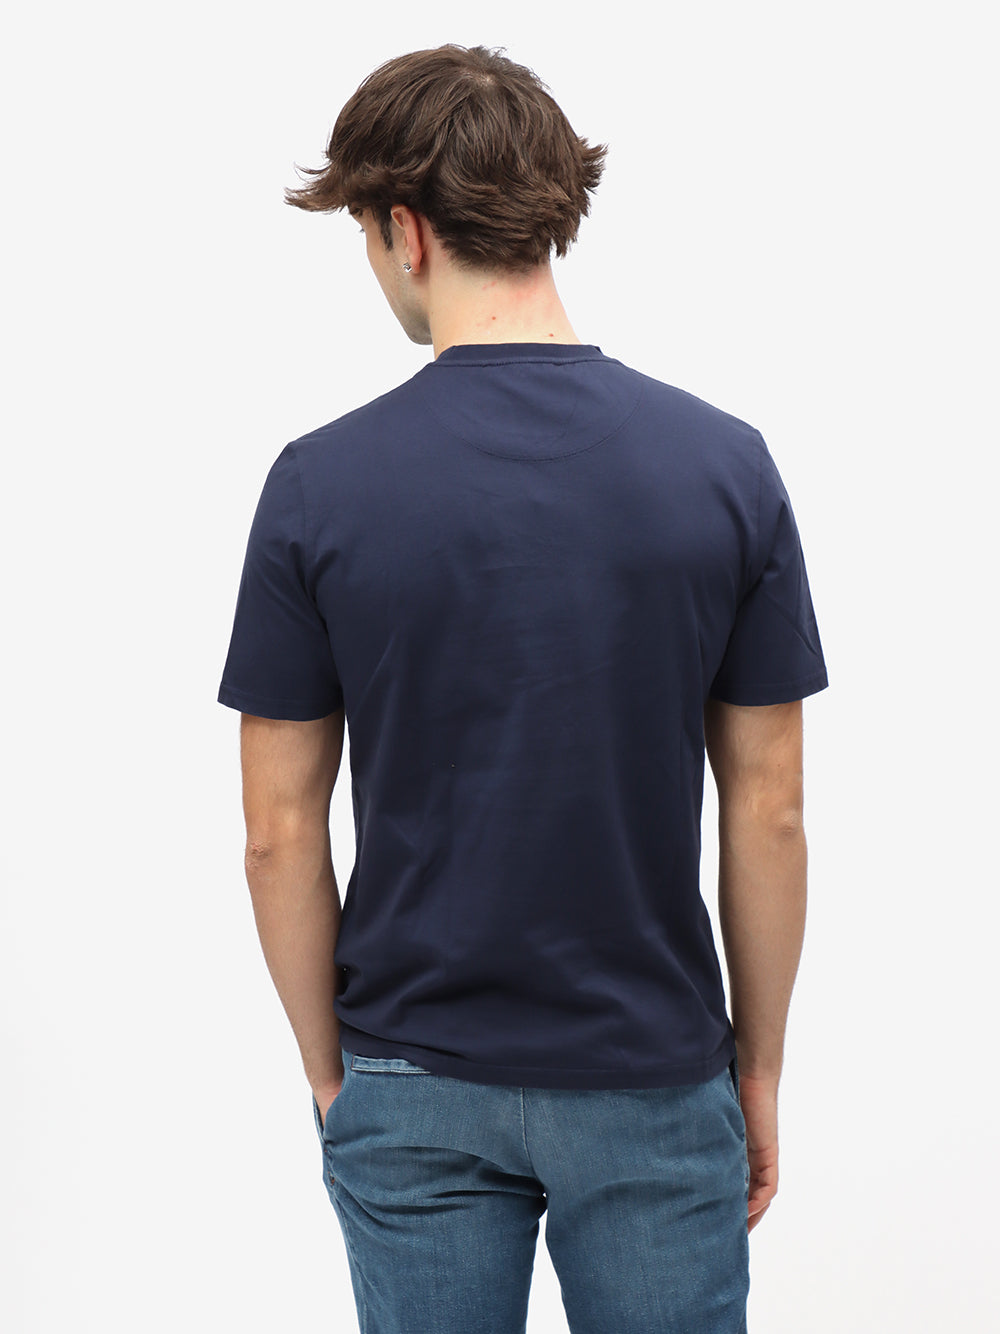 Ciesse Piumini T-Shirt Uomo Polt 2.0-Blu